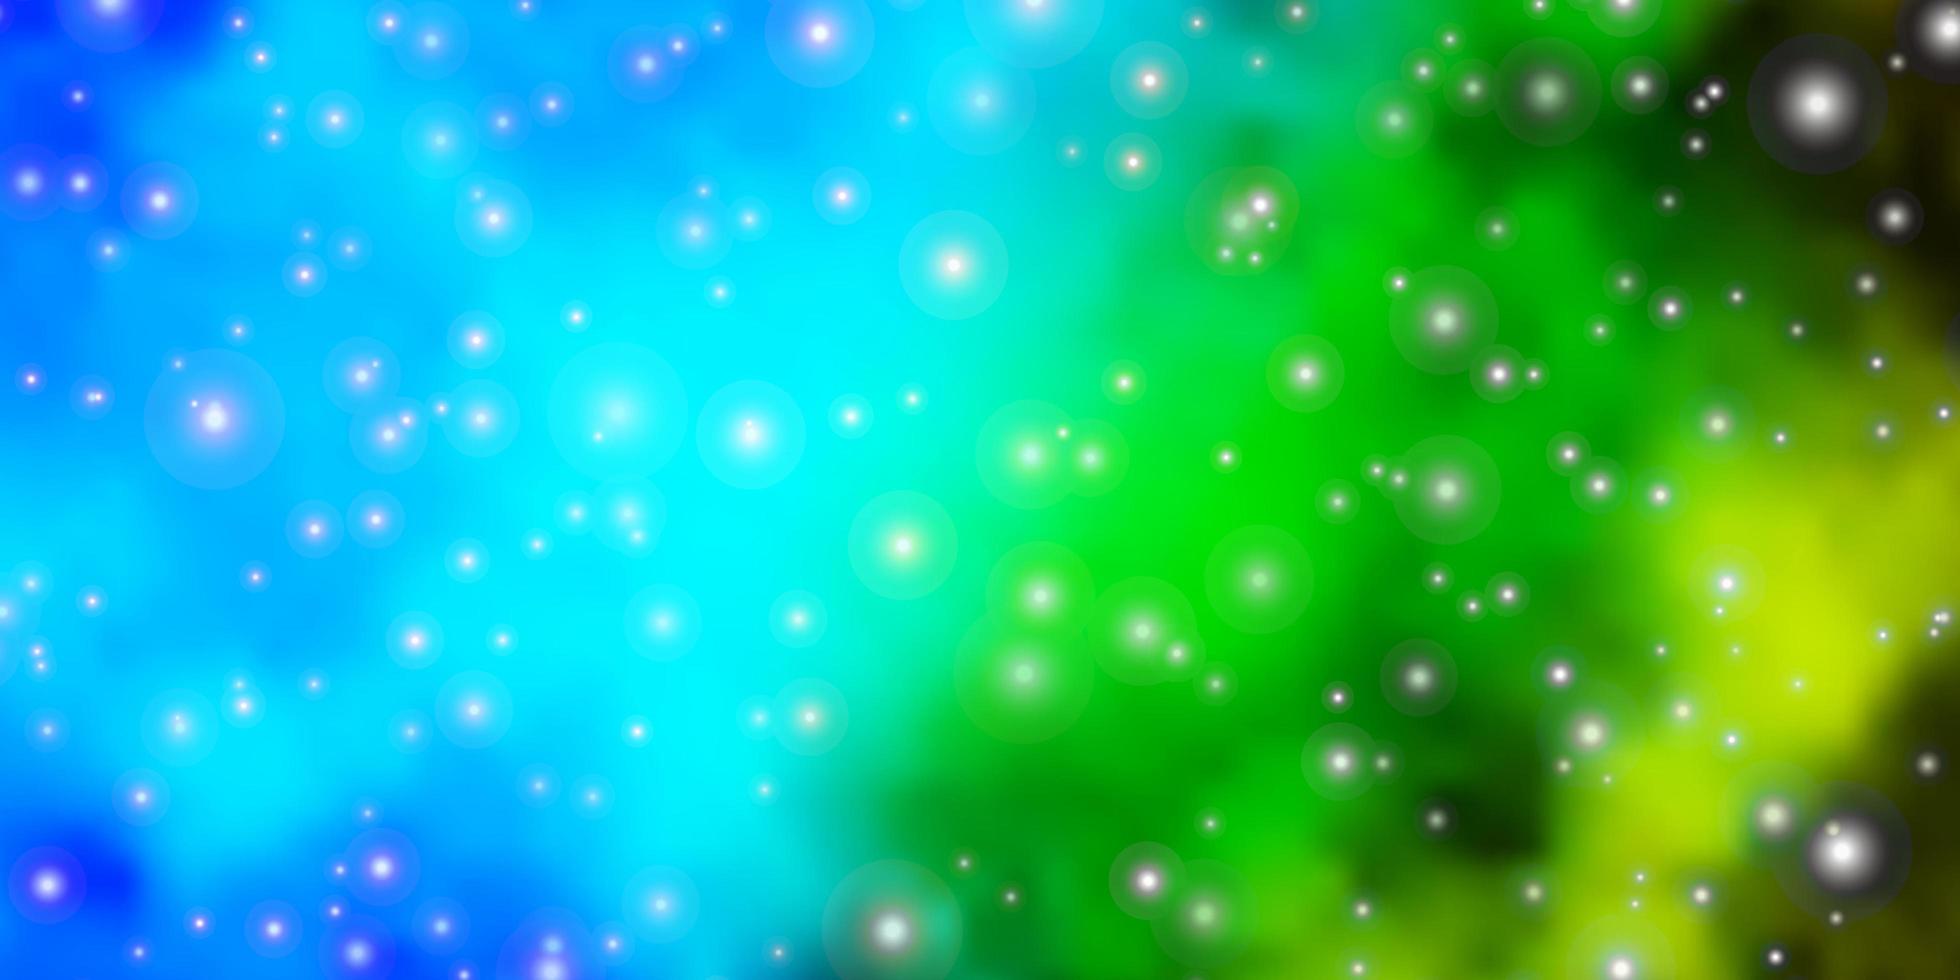 patrón de vector azul claro, verde con estrellas abstractas. Ilustración abstracta geométrica moderna con estrellas. patrón para anuncios de año nuevo, folletos.